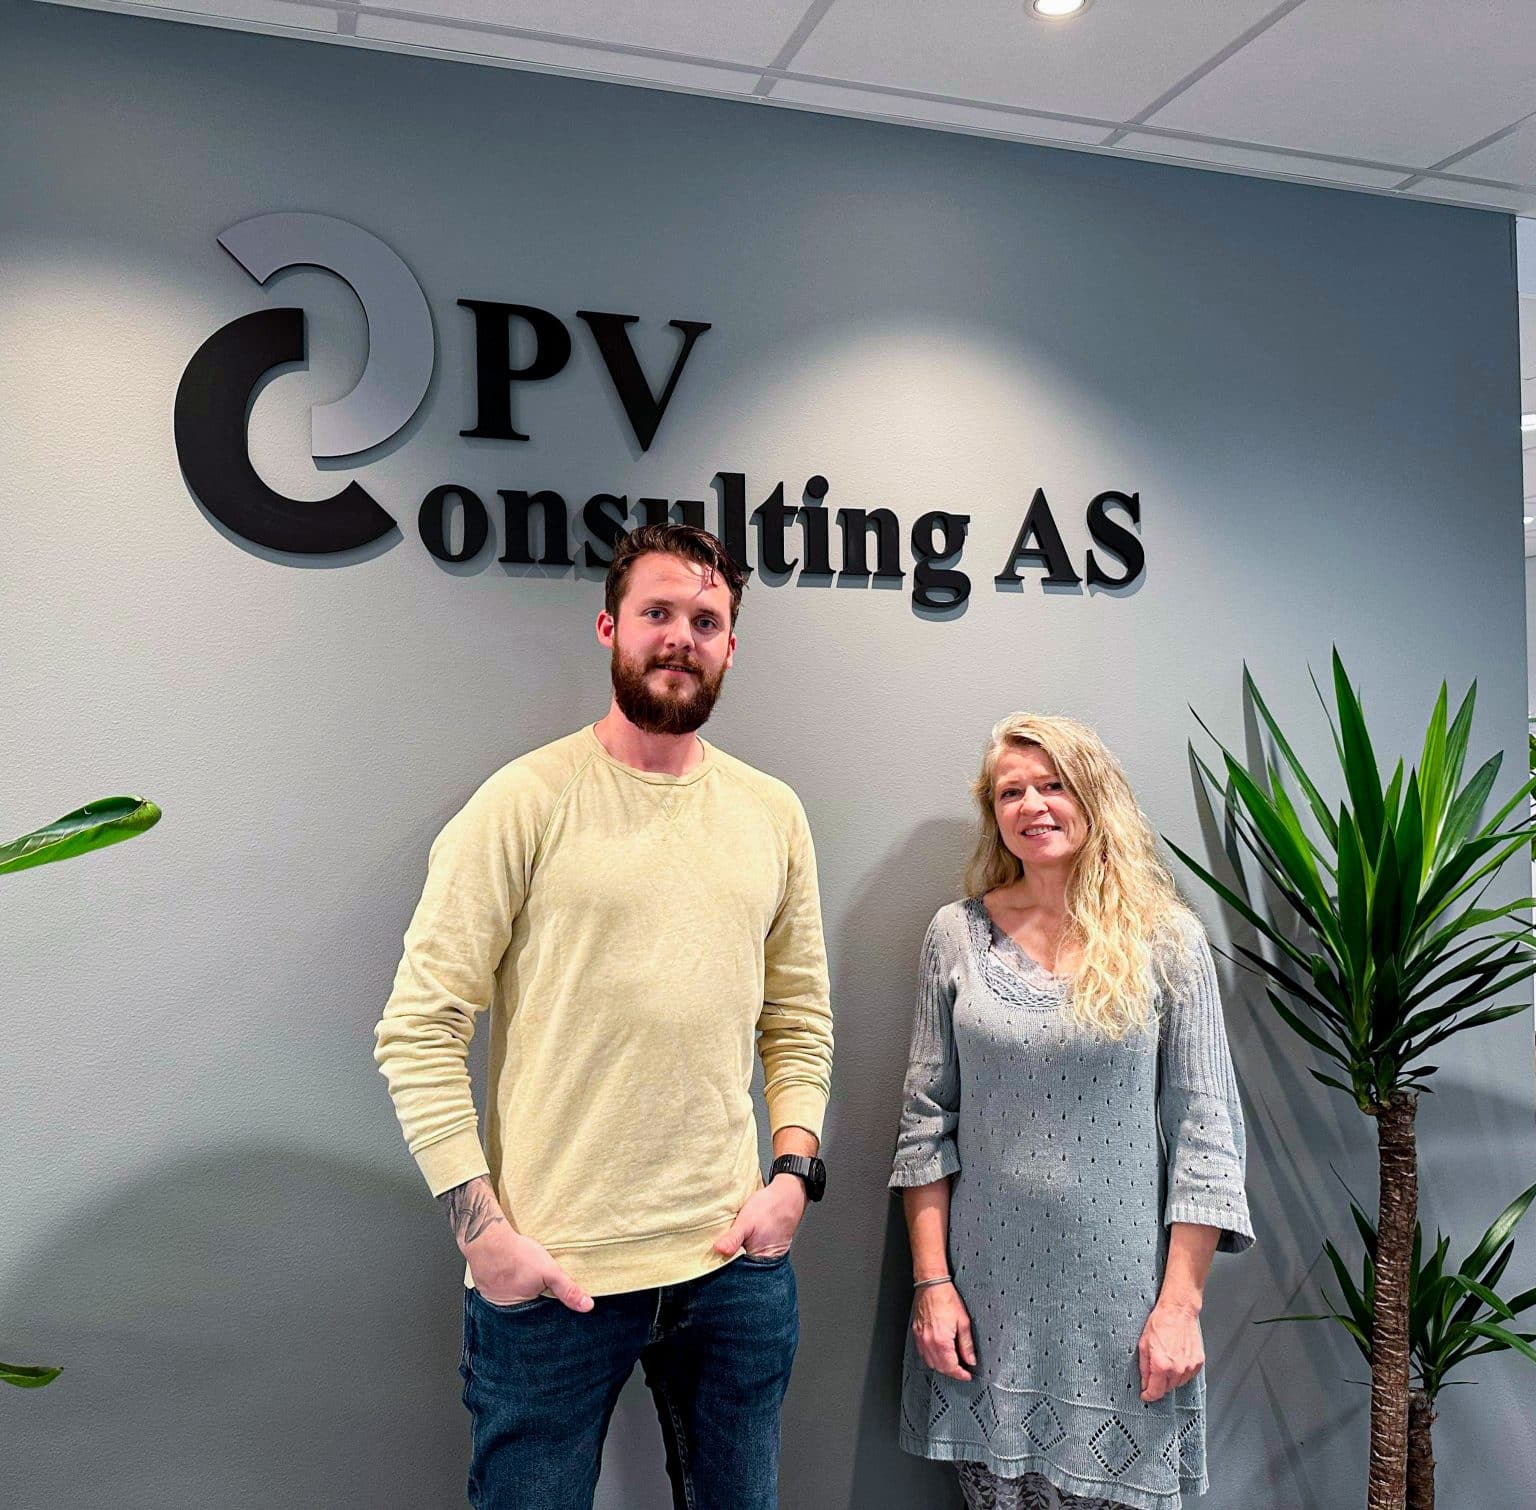 Velkommen som nyansatt hos OPV Consulting Yngve!